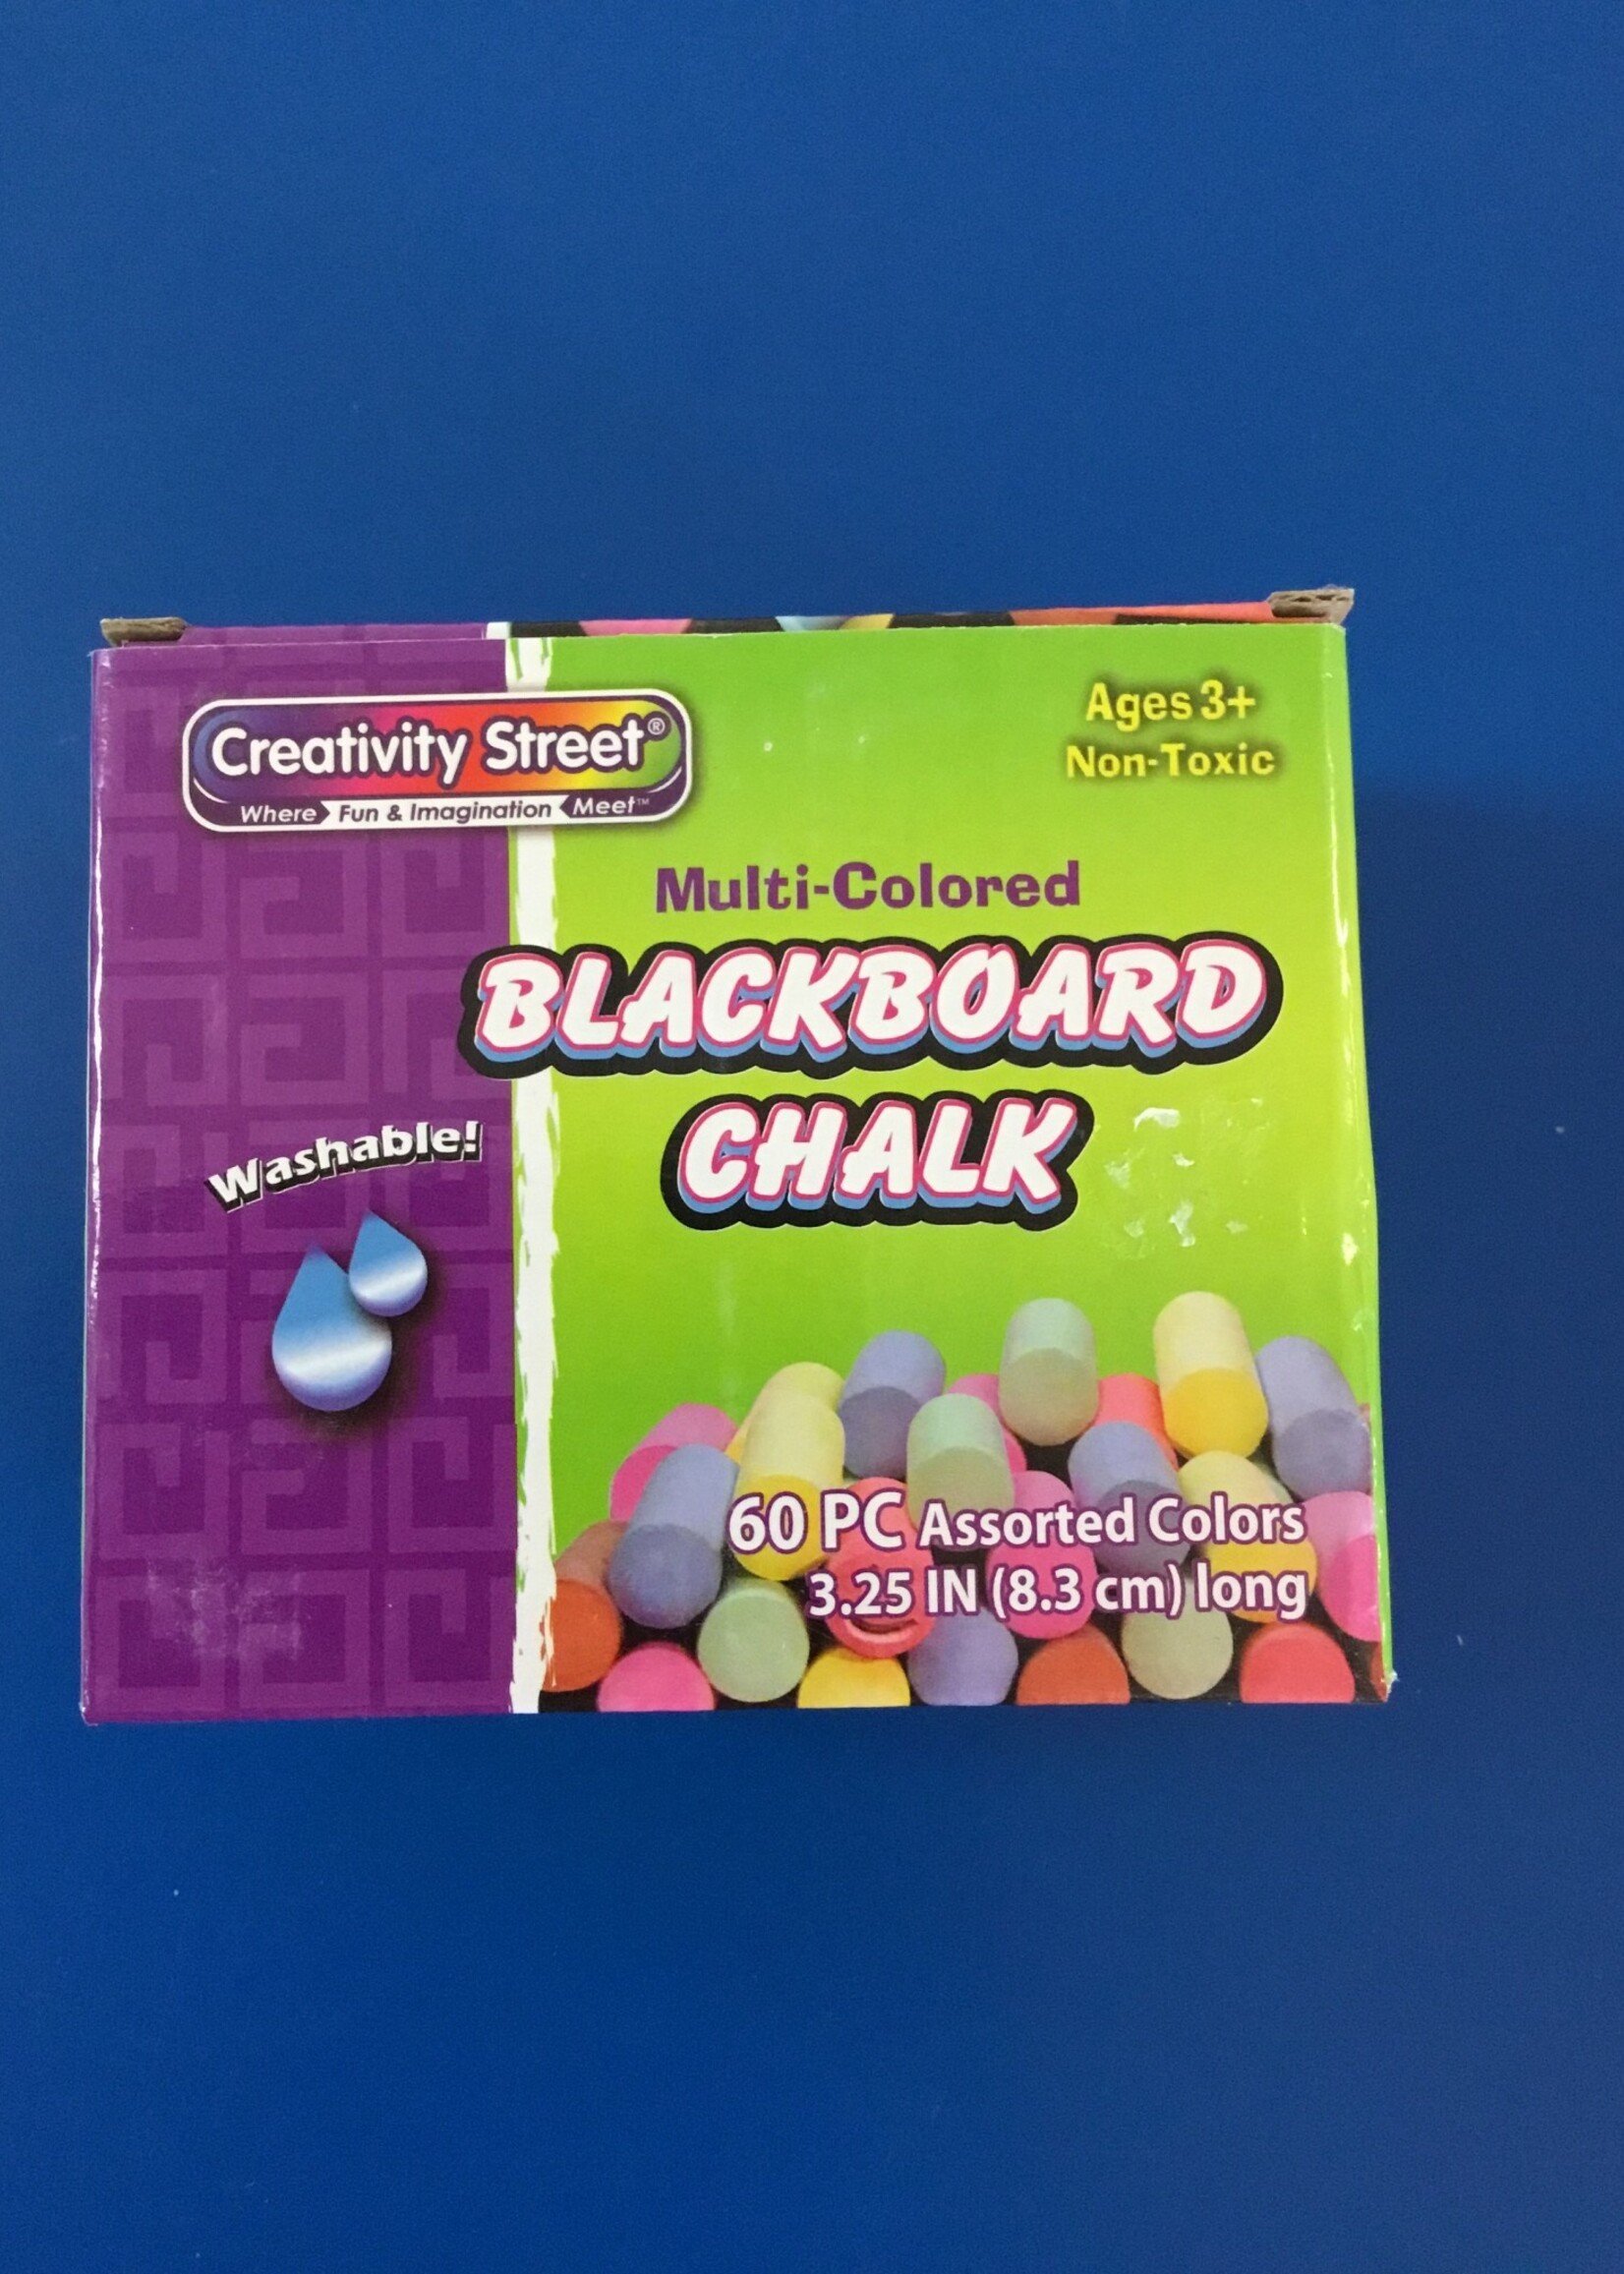 Multi-Colored Blackboard Chalk